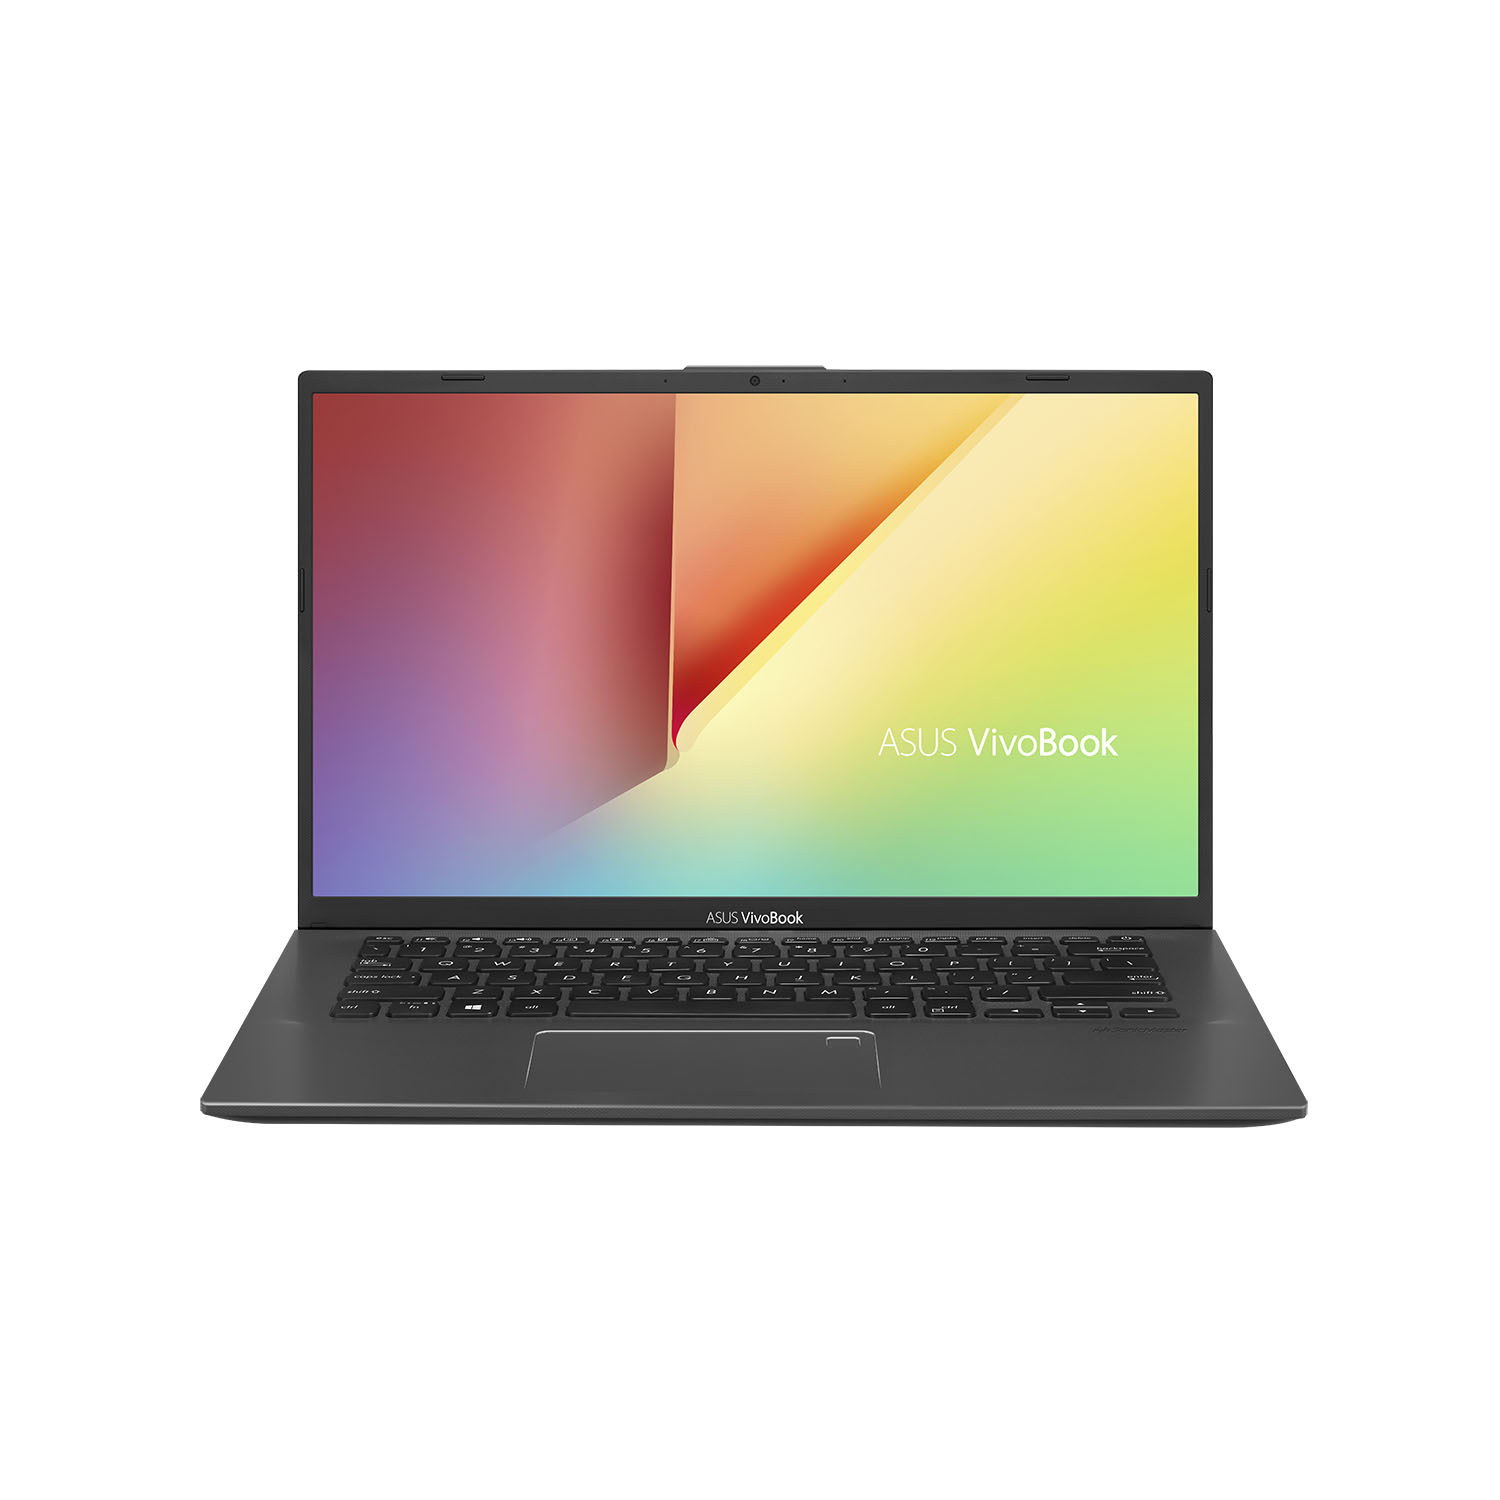 Laptop Asus A512FL-EJ163T - Intel Core i5-8265U, 8GB RAM, HDD 1TB, Nvidia GeForce MX250 2GB GDDR5, 15.6 inch